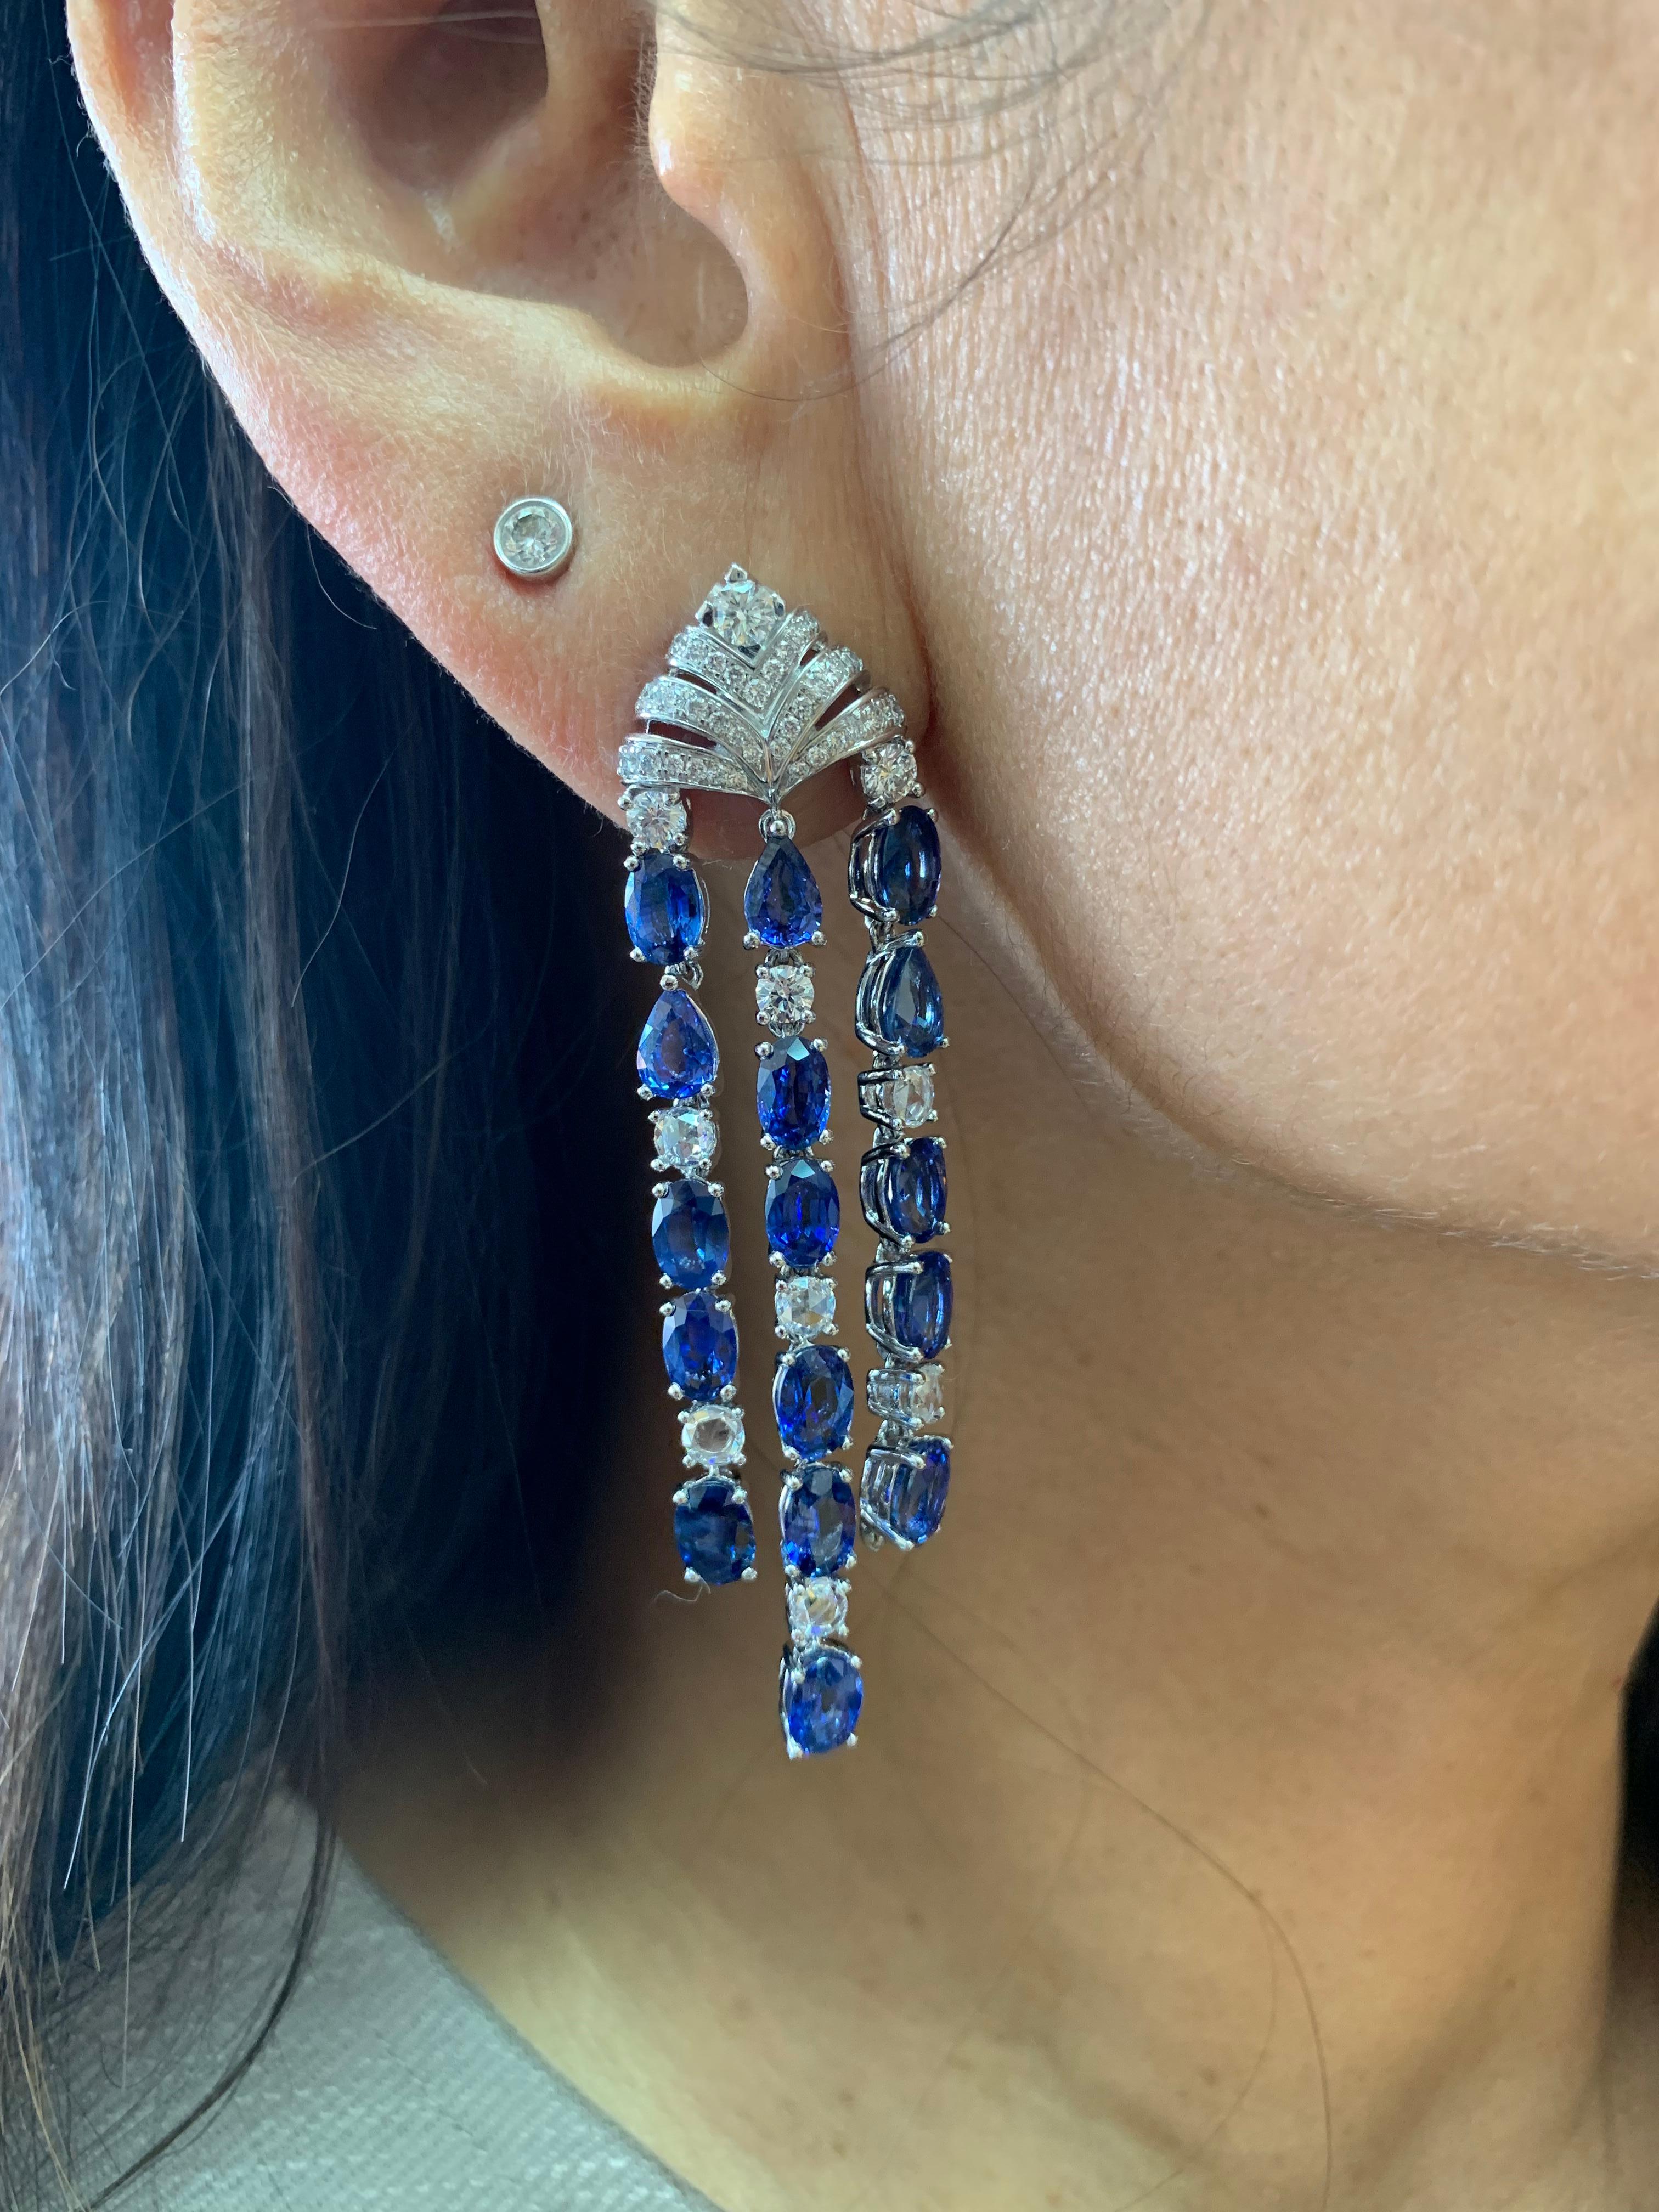 Dies ist ein eleganter und klassischer Ohrring aus blauem Saphir mit zeitlosen Akzenten aus weißen Diamanten, die in Weißgold gefasst sind. Ein zeitloses Stück, das über Generationen hinweg seinen Wert behalten wird... 

Ohrringe mit blauem Saphir